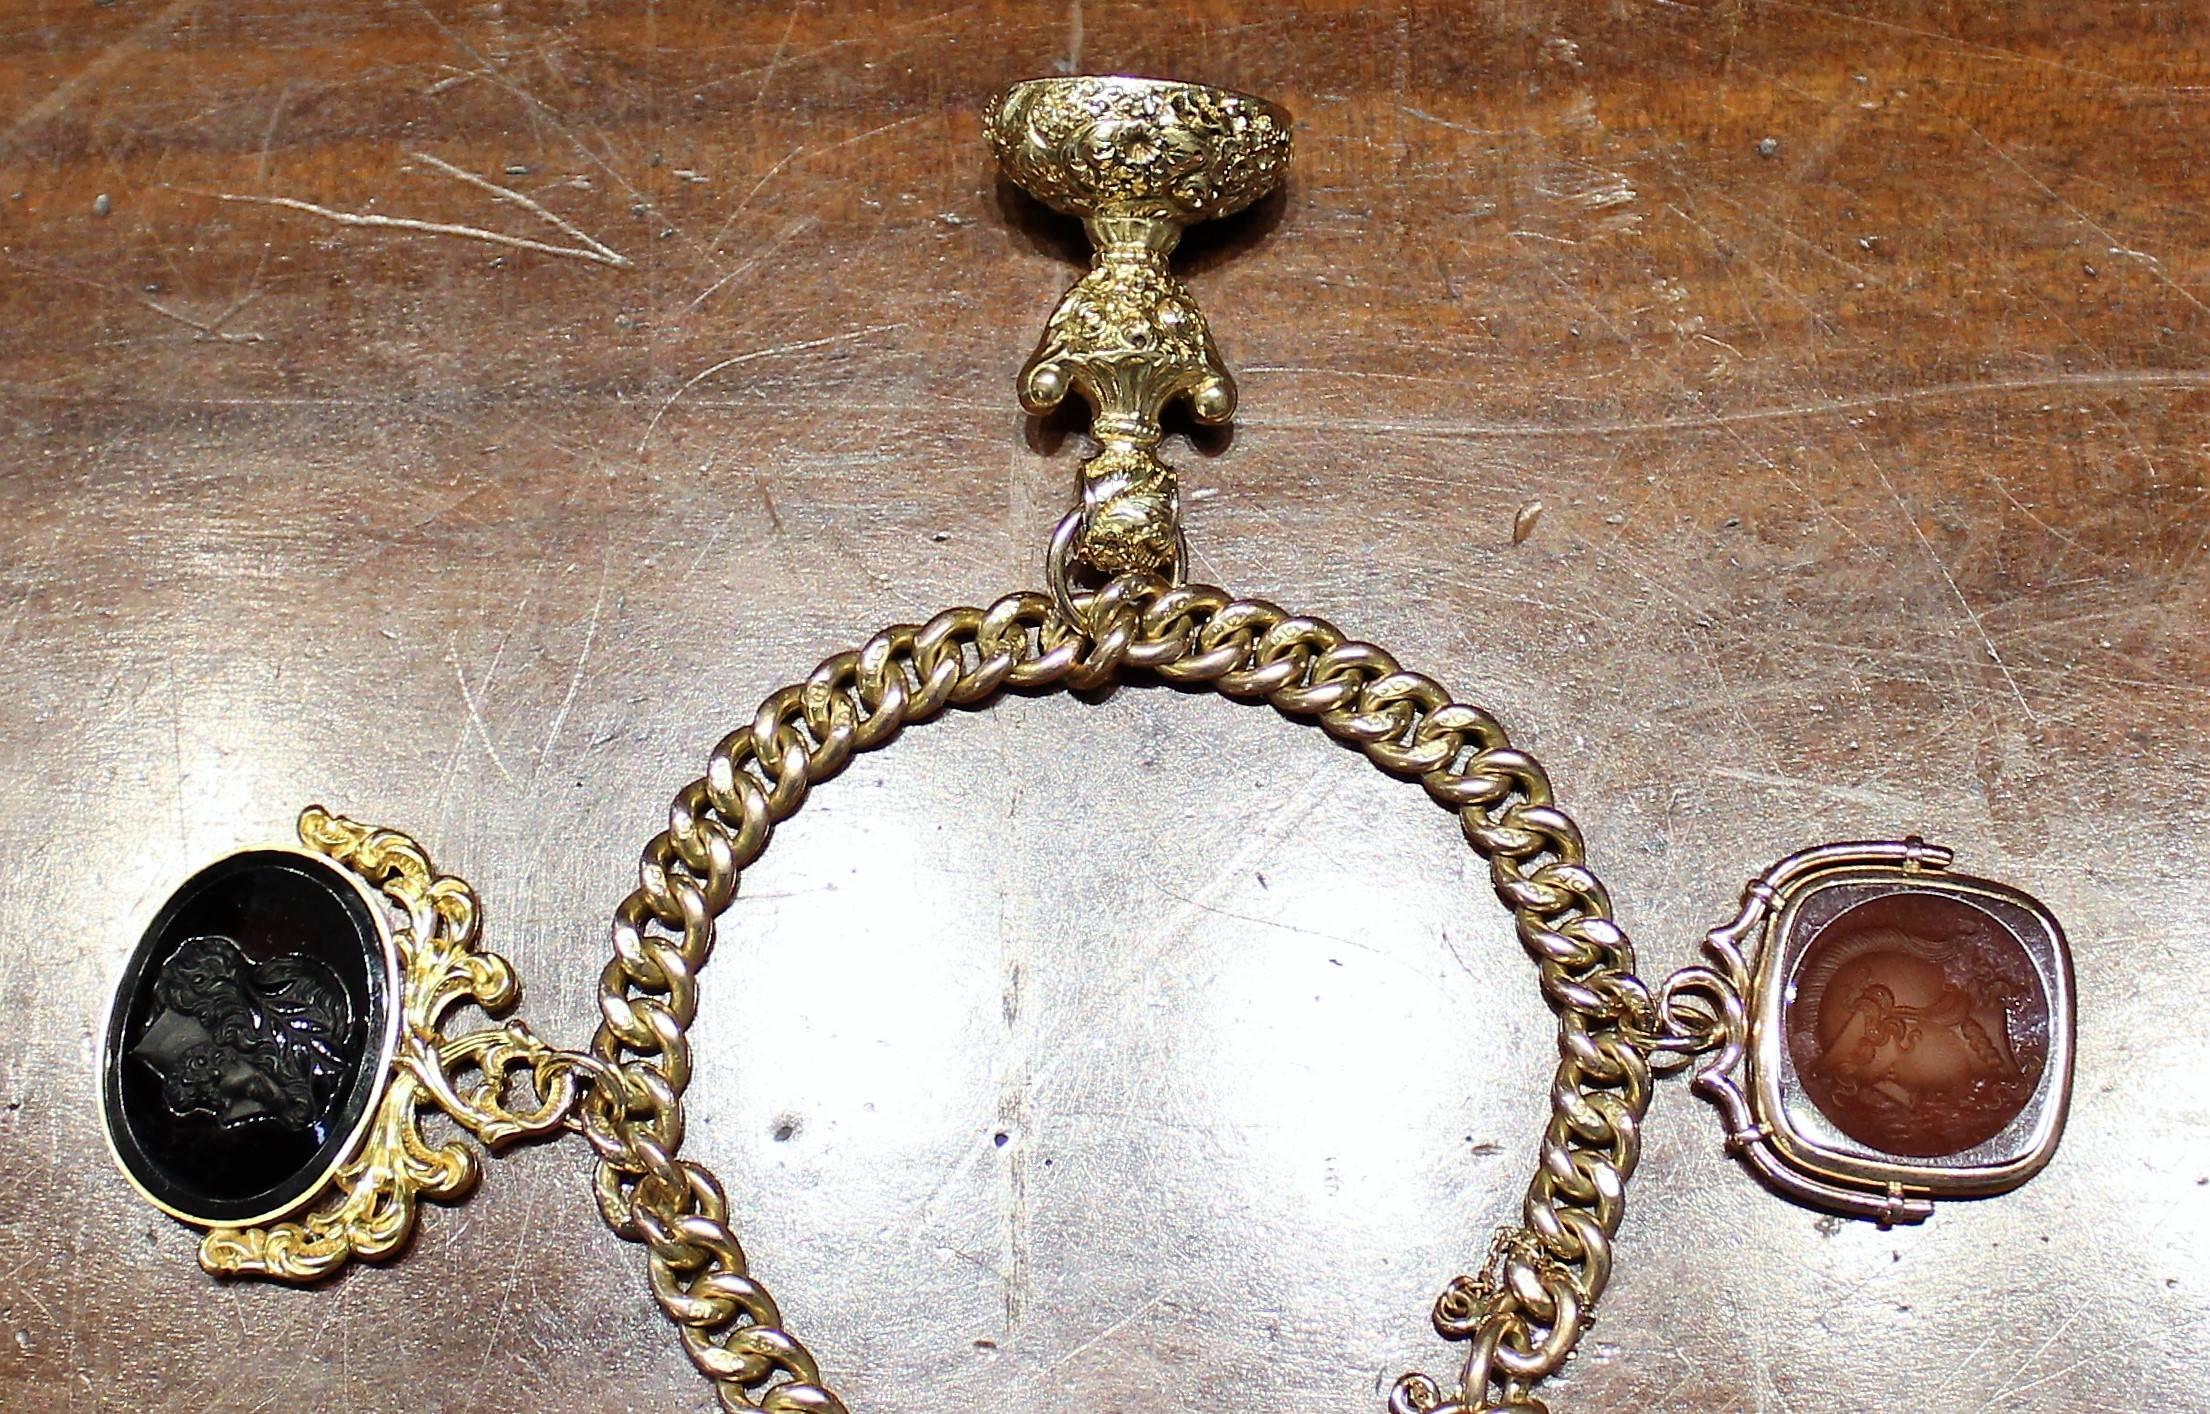 Goldarmband mit Medaillon und vier schön geschnitzten Karneol-Intaglios aus der georgianischen Zeit. Das Armband und das Medaillon sind aus 9-karätigem Antikgold, während die Intaglien auf 14-karätiges Gold oder höher getestet wurden. Das